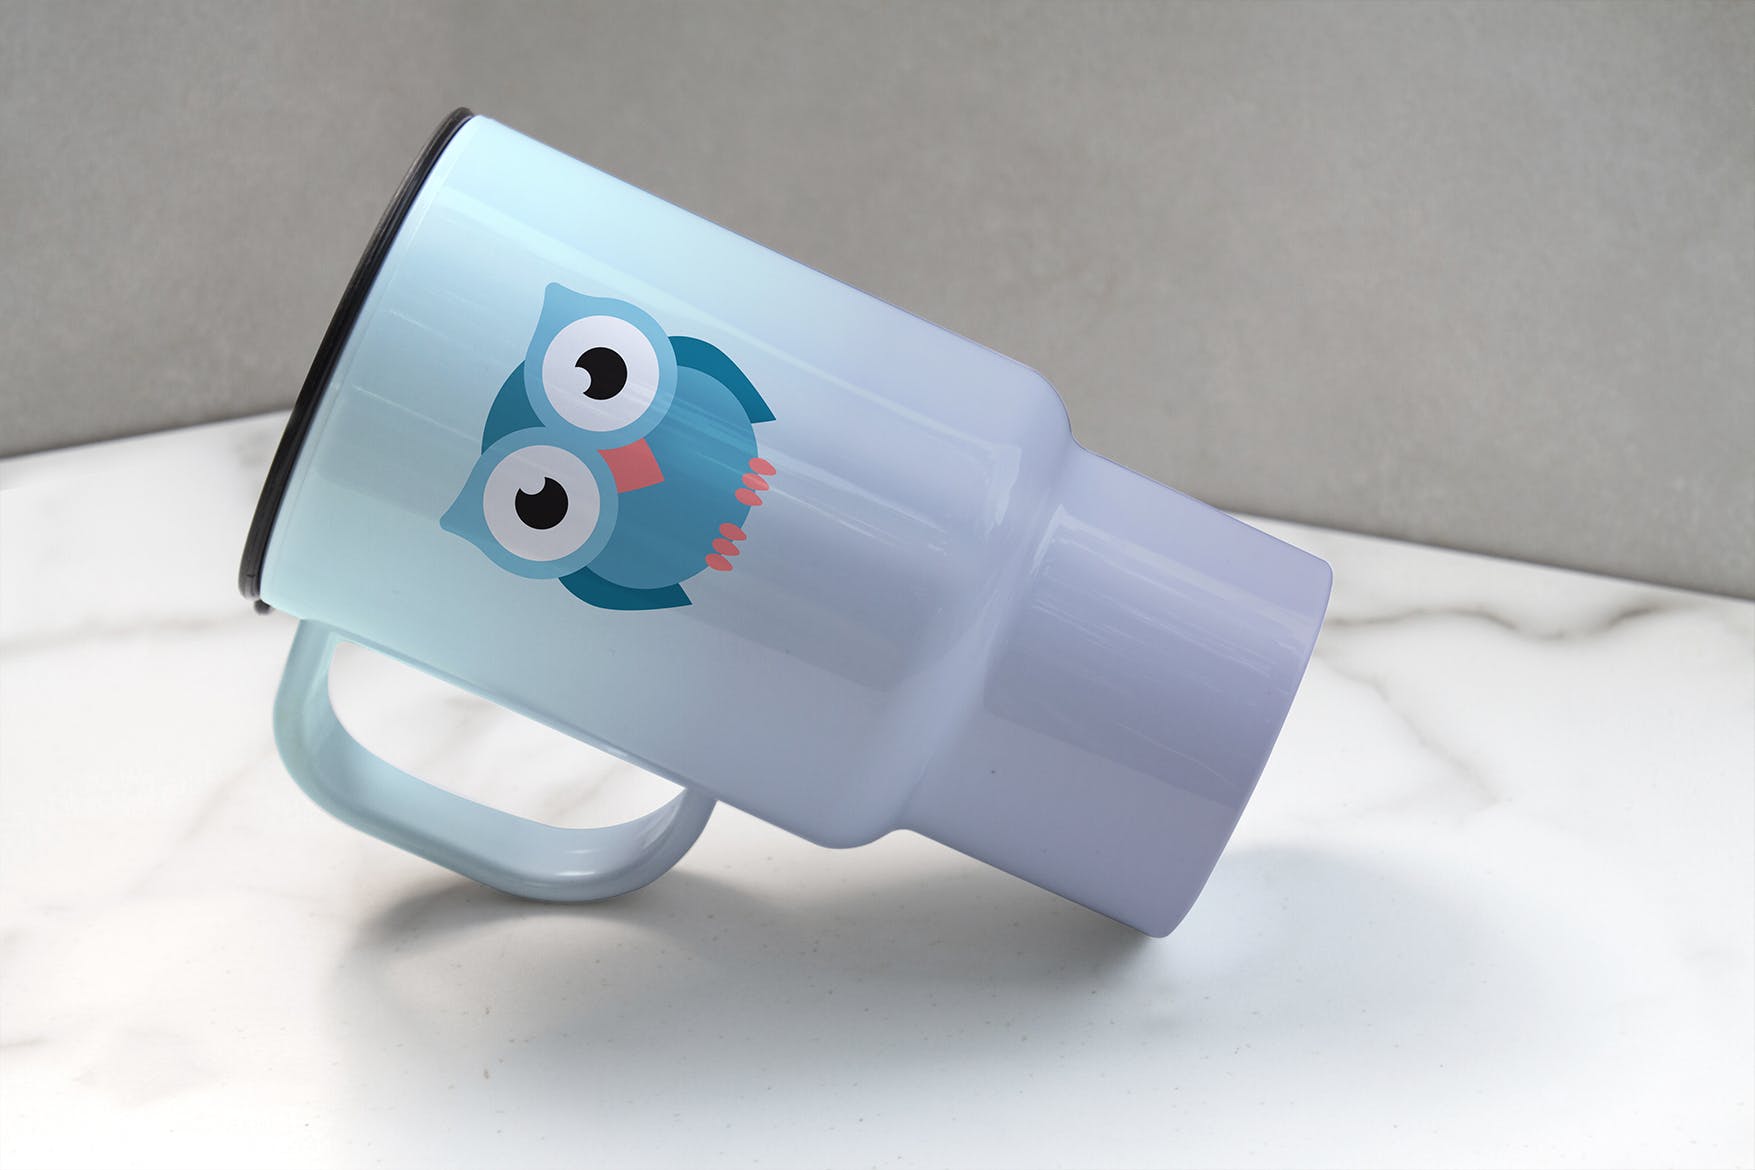 便携式杯子图案设计预览第一素材精选 Portable Cup Mockup插图